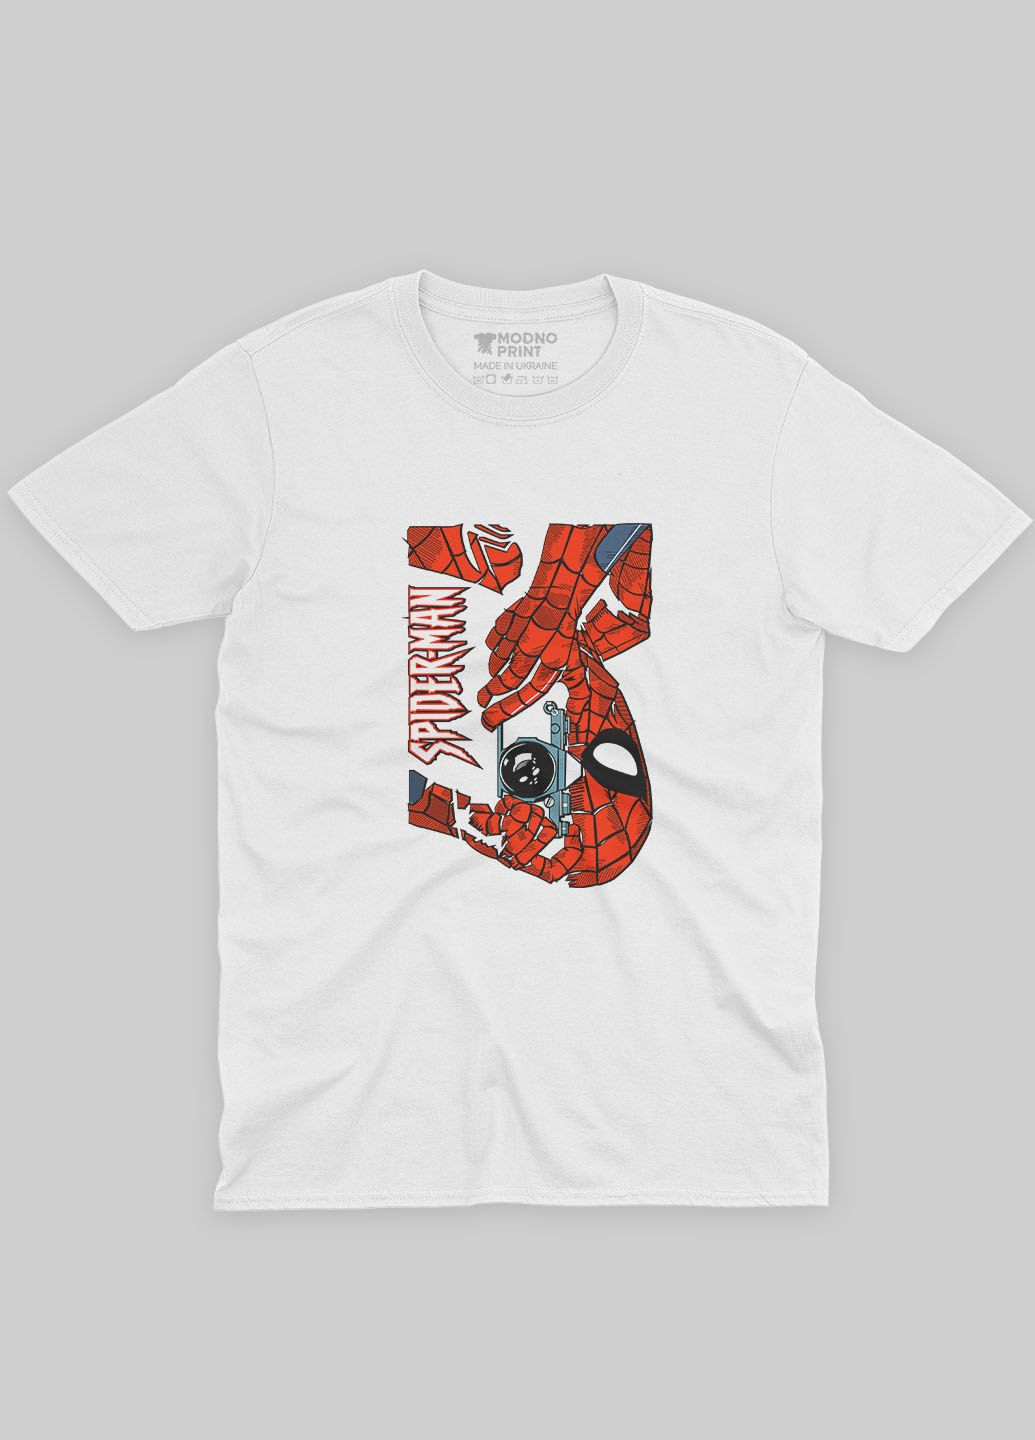 Белая демисезонная футболка для девочки с принтом супергероя - человек-паук (ts001-1-whi-006-014-042-g) Modno